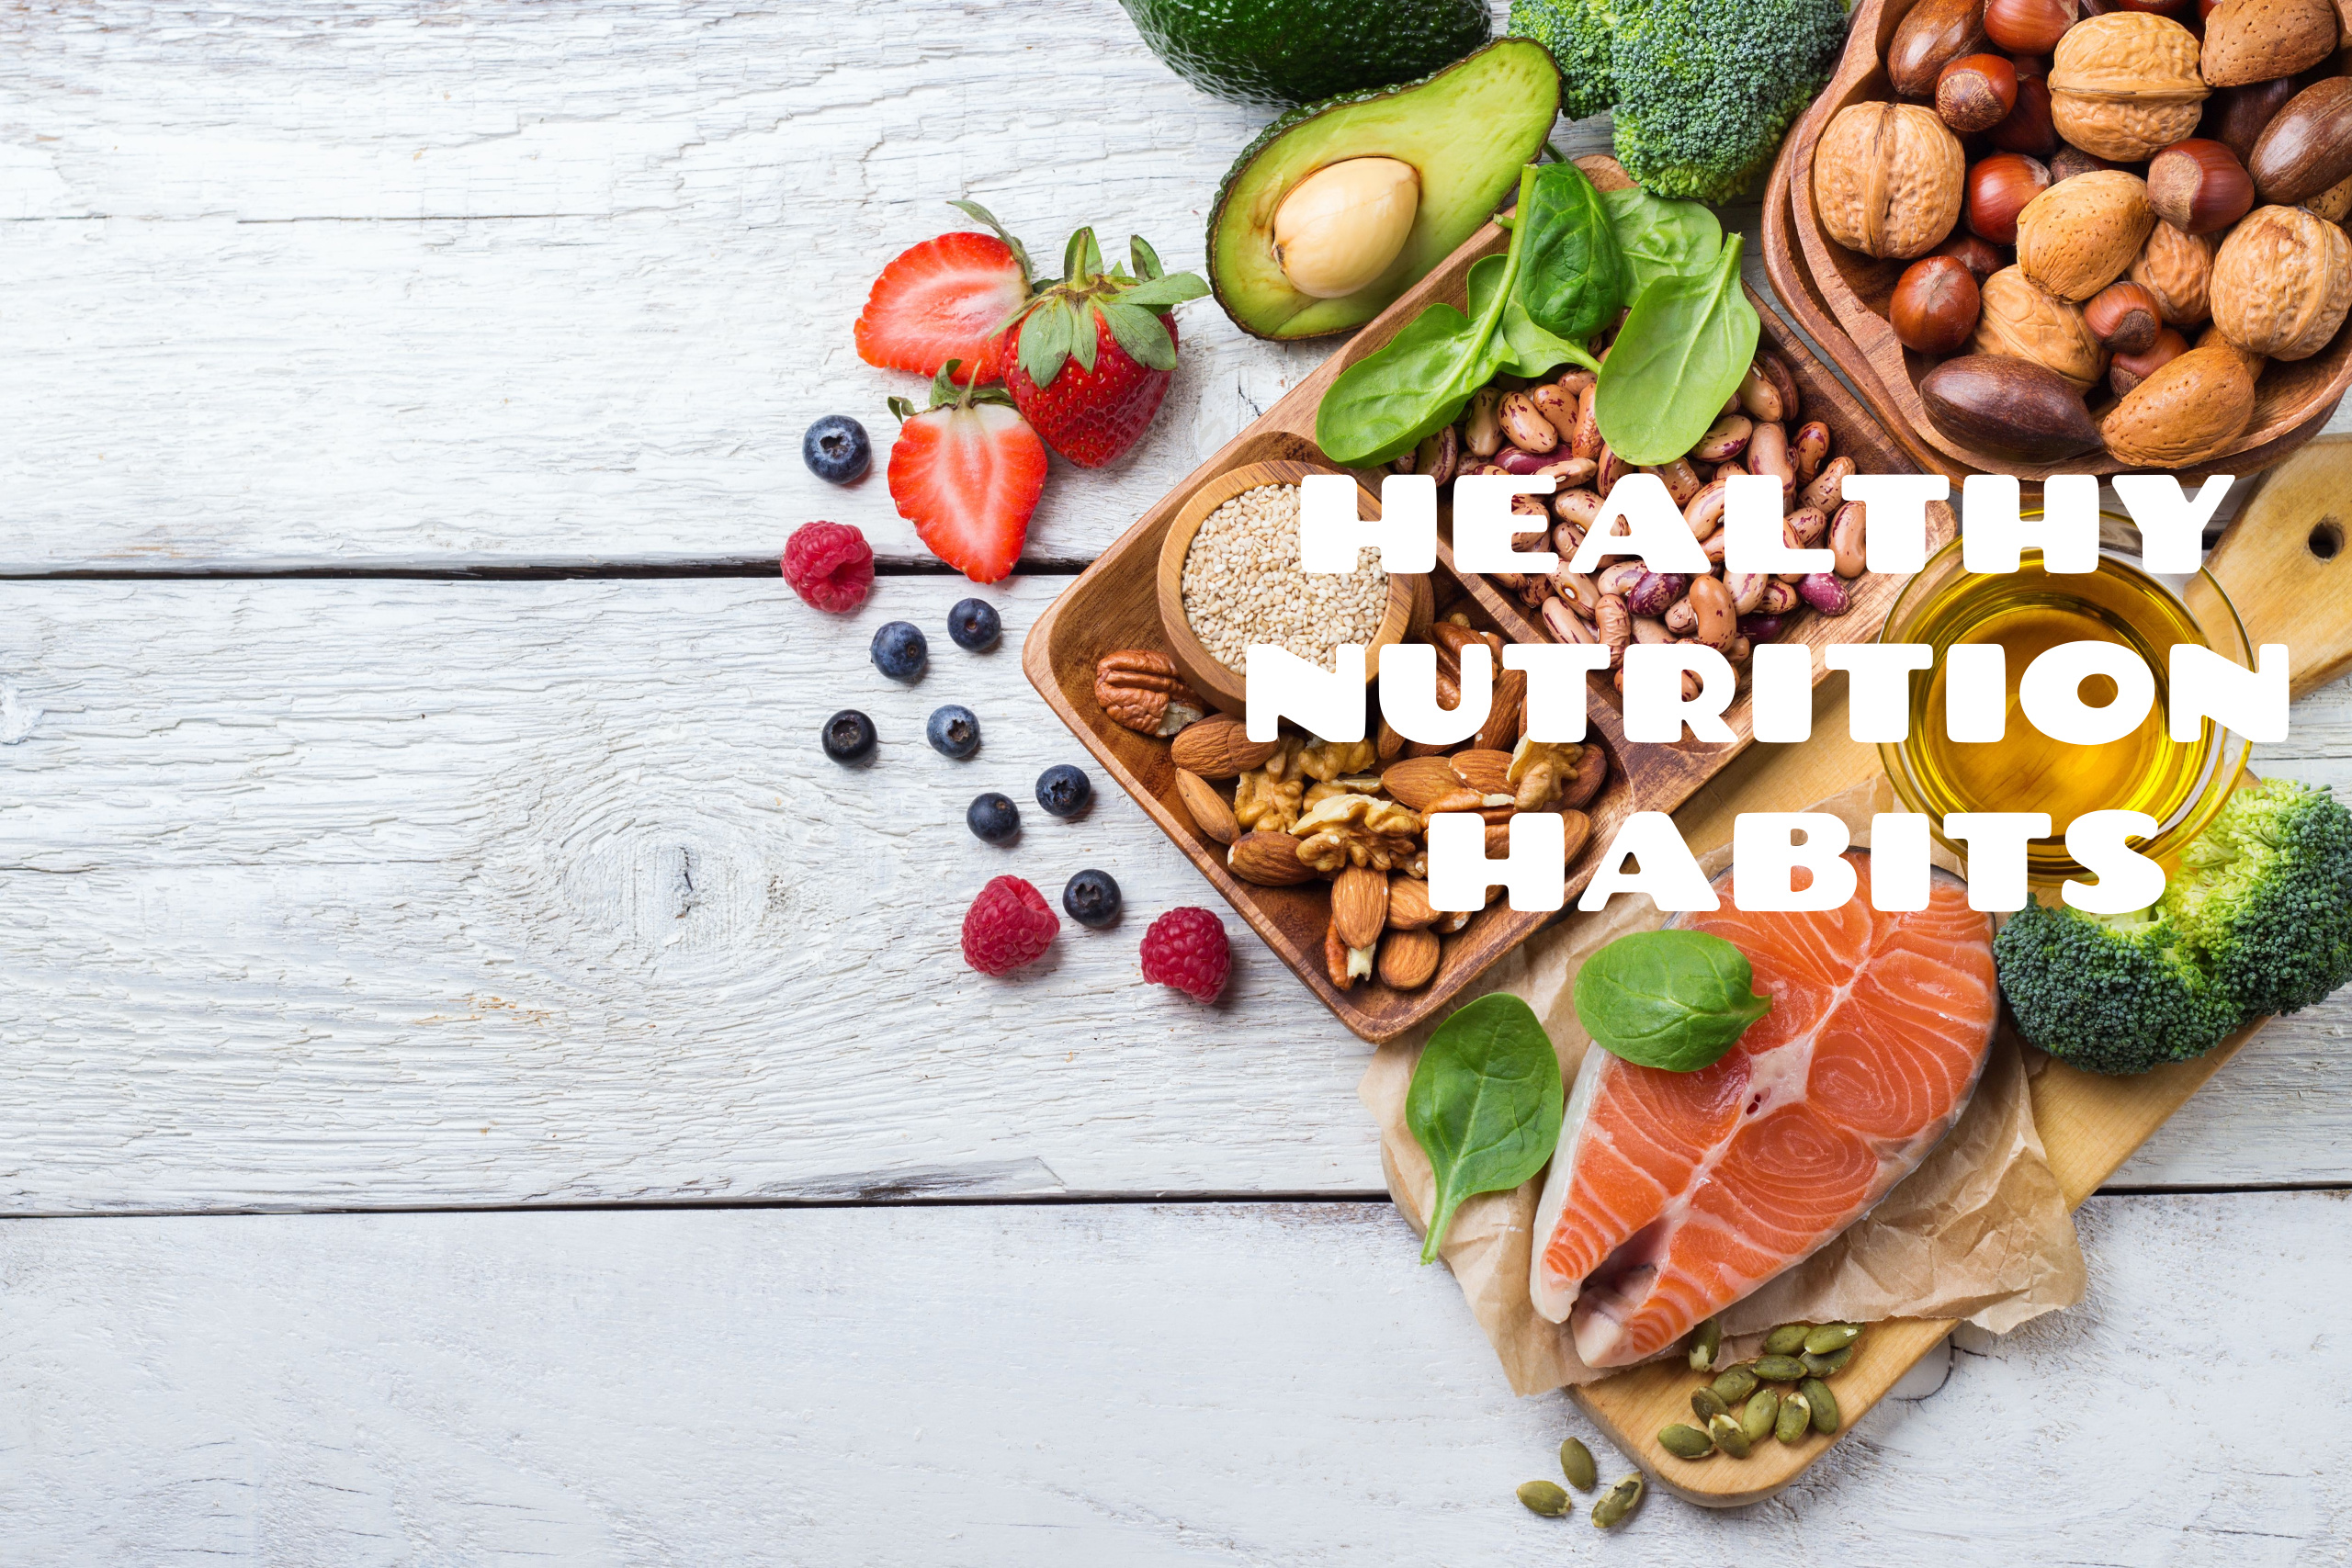 Healthy Nutrition Habits